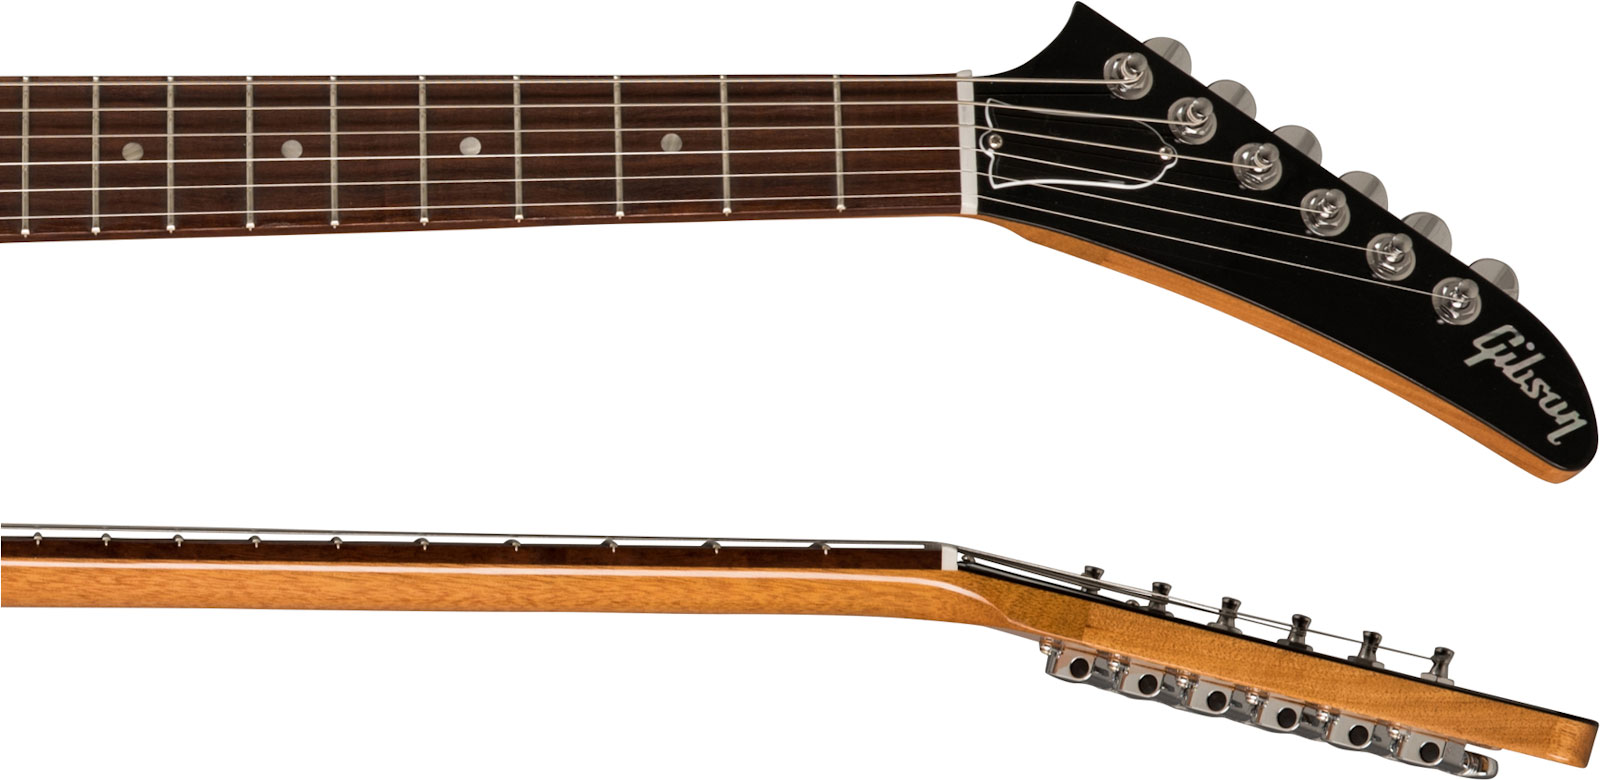 Gibson Explorer Original 2h Ht Rw - Antique Natural - Retro-Rock-E-Gitarre - Variation 3